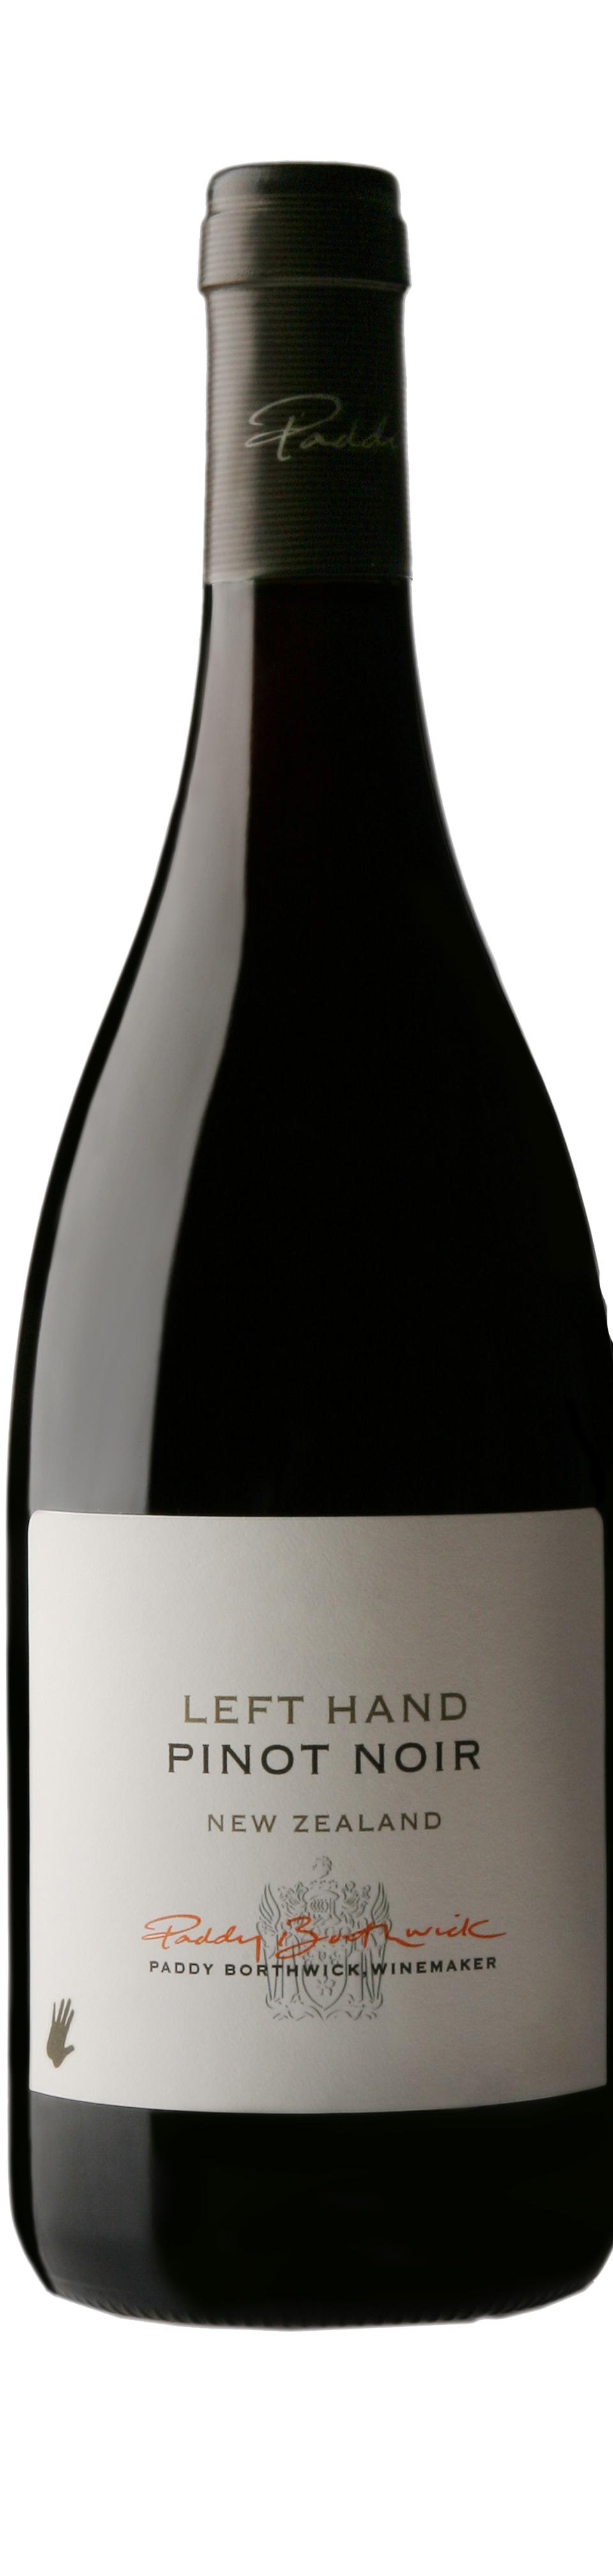 Bottle shot of 2011 Left Hand Pinot Noir